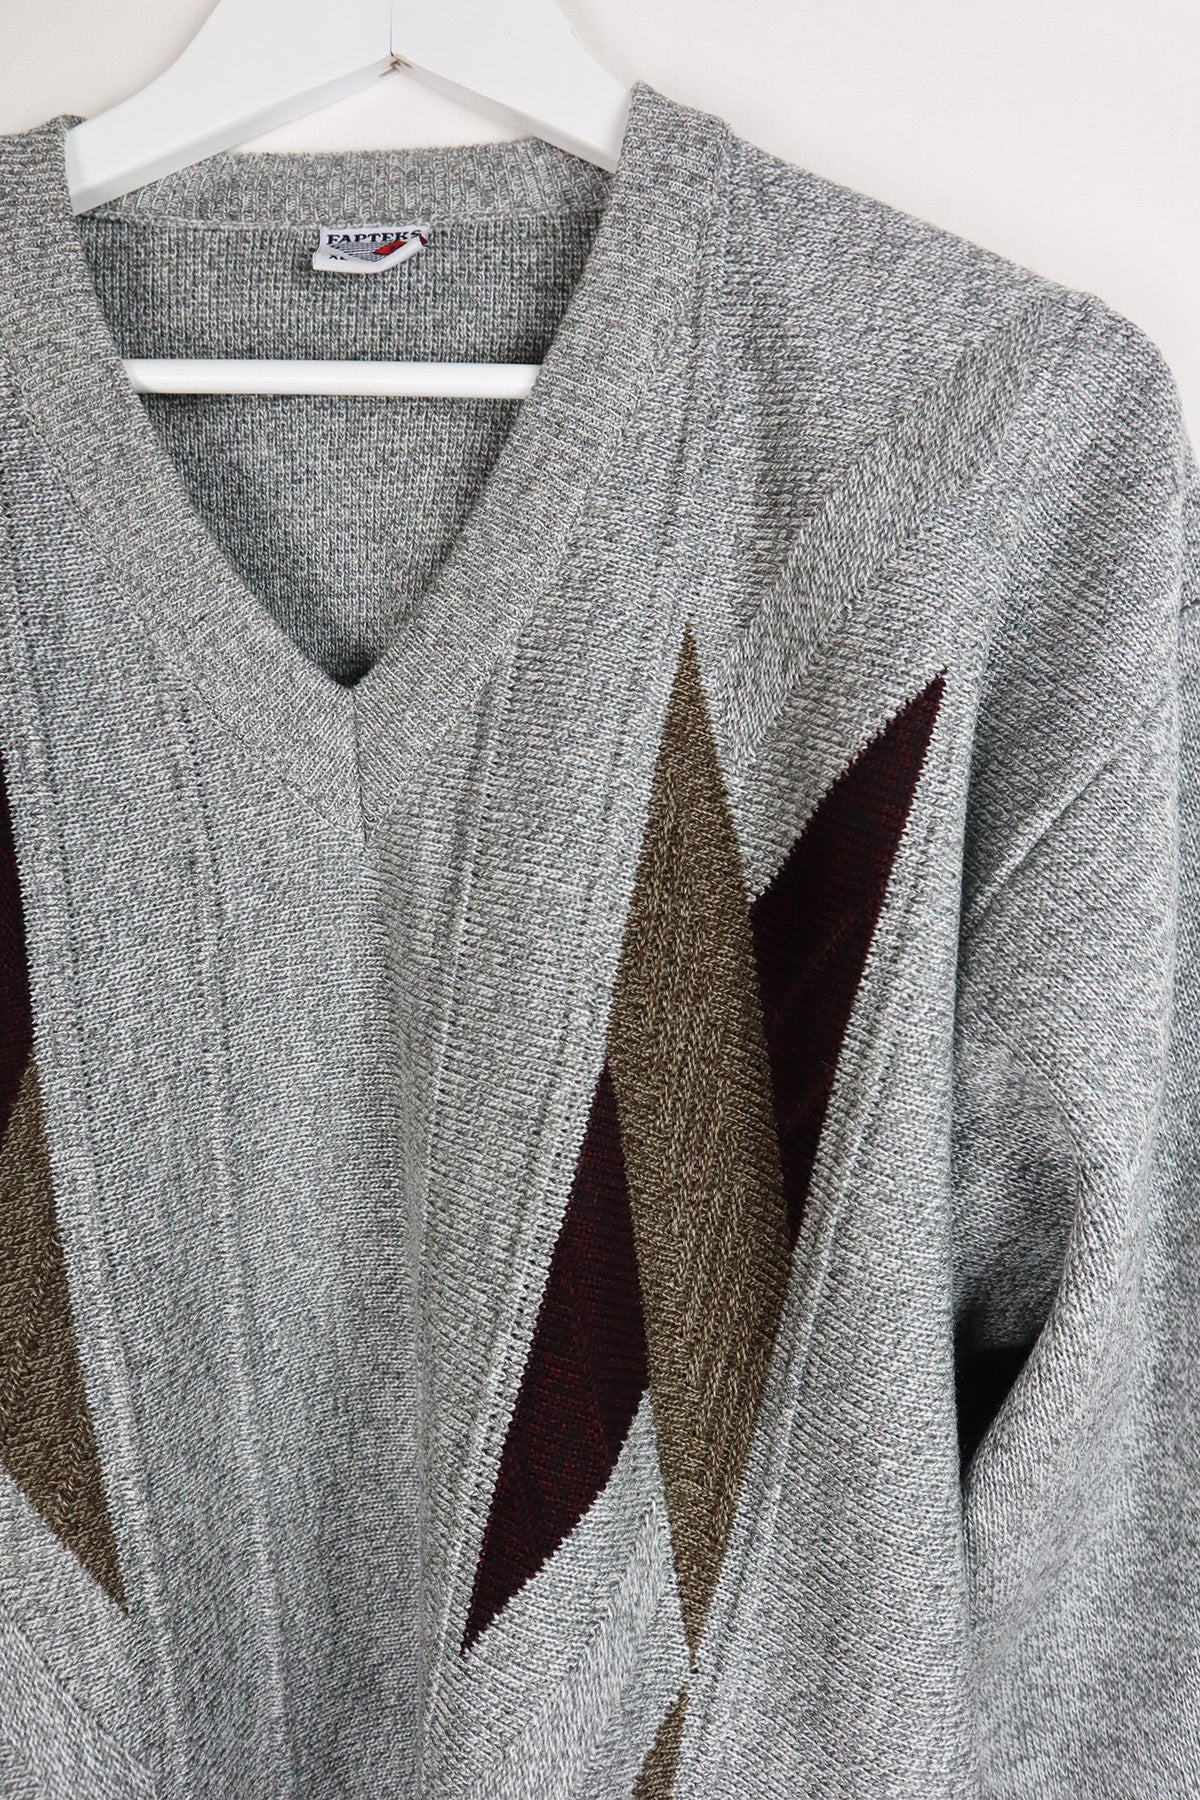 Pullover Vintage Grau V-Ausschnitt ( Gr.L/XL )